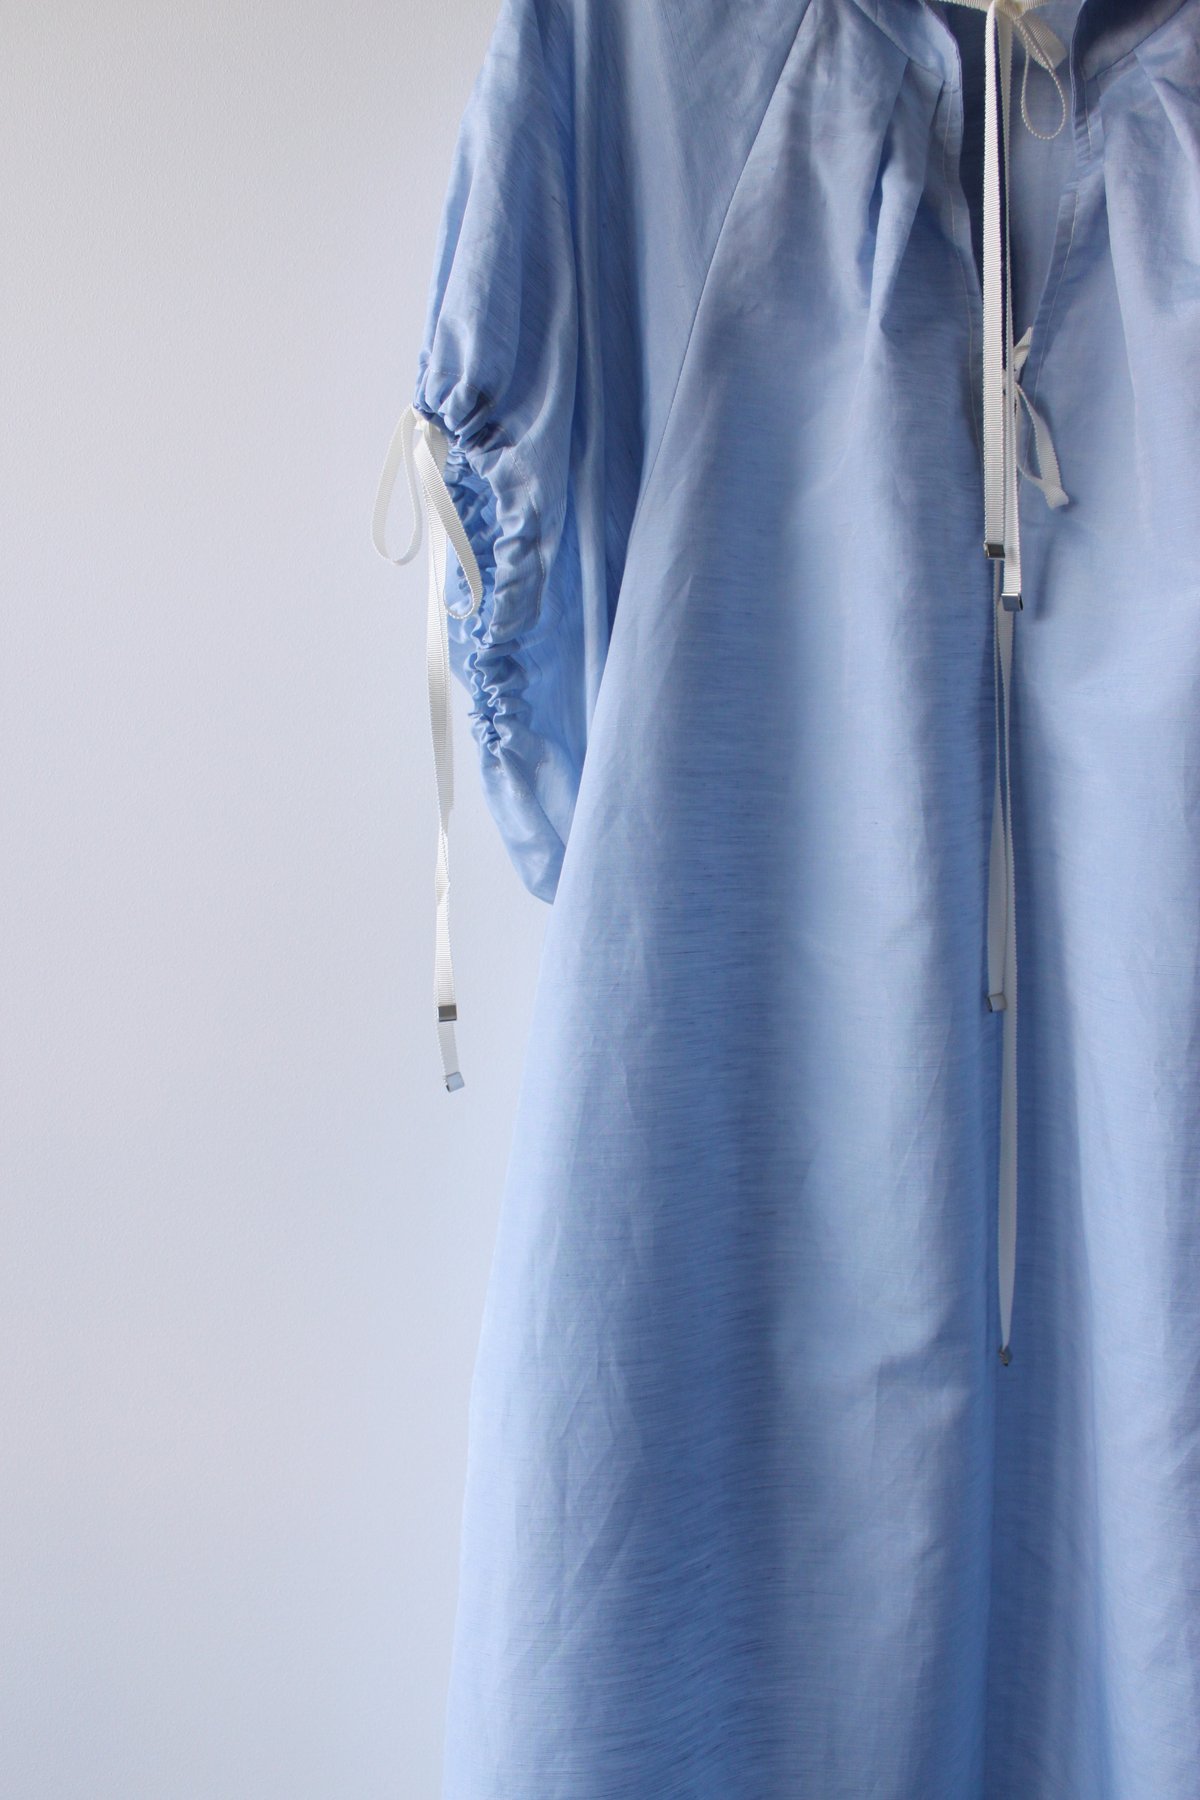 MADE-TO-ORDER - Silk linen A line puff sleeve dress